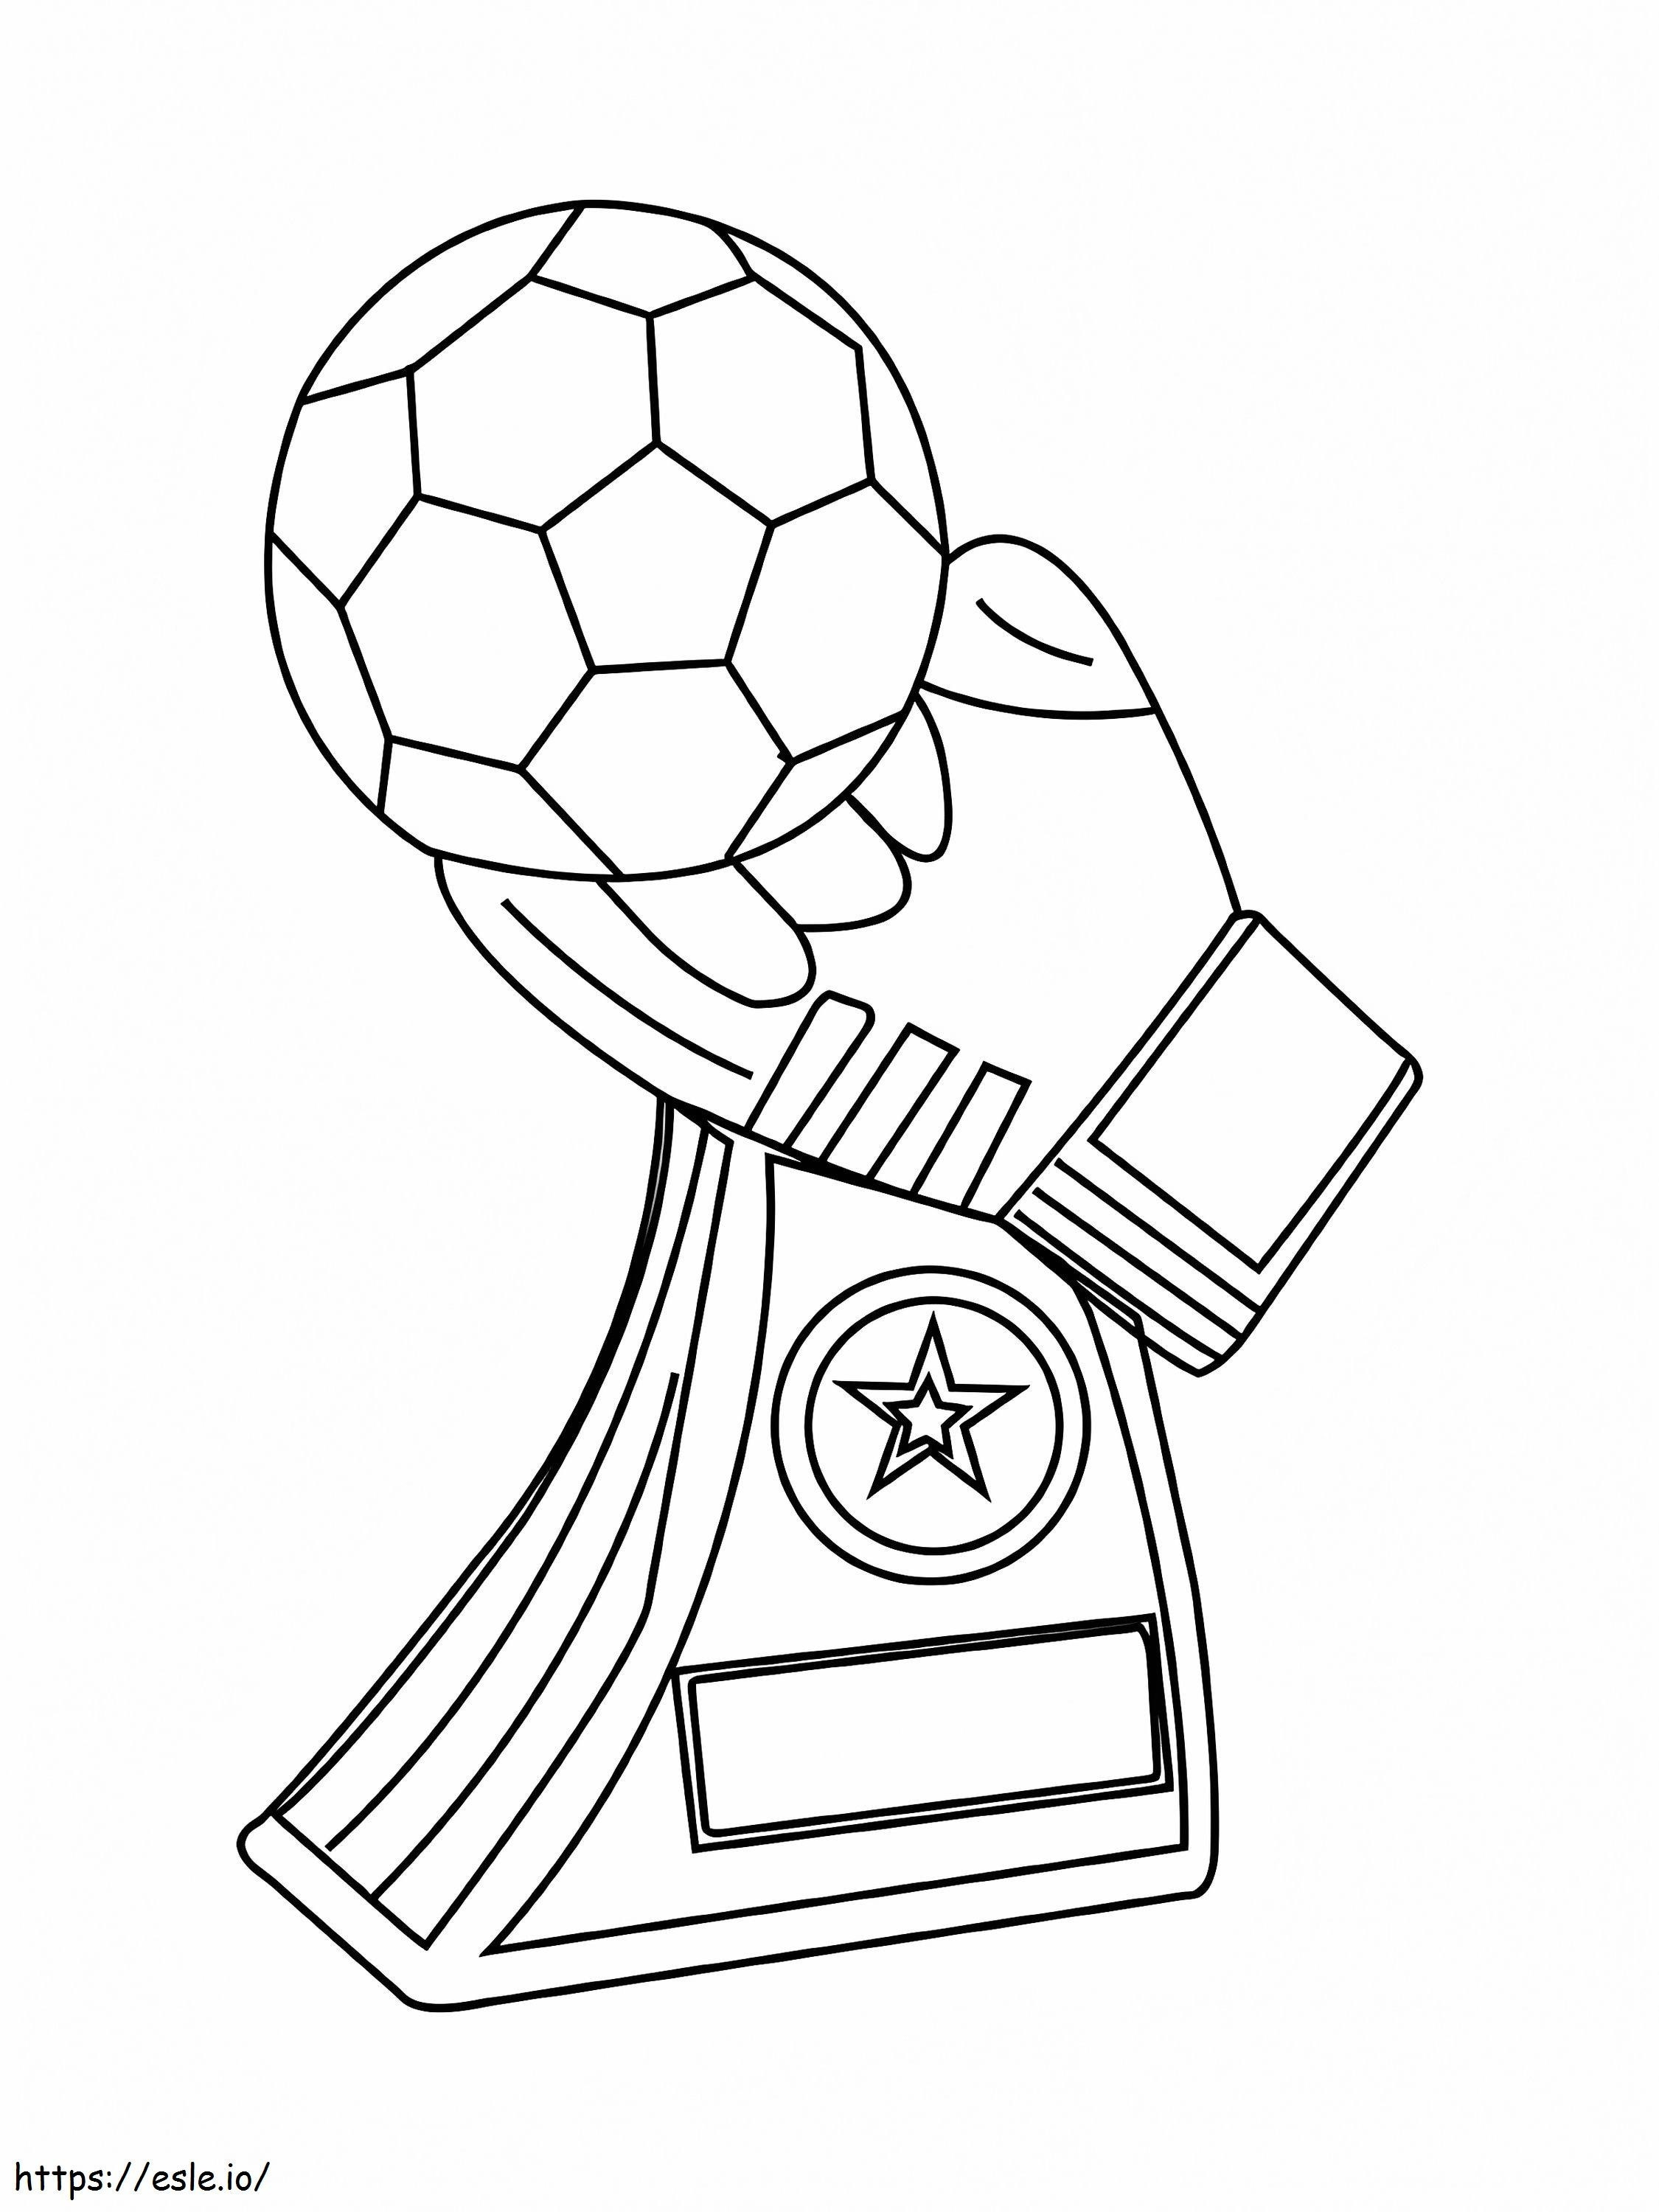 Troféu Ouro de Futebol 2 para colorir